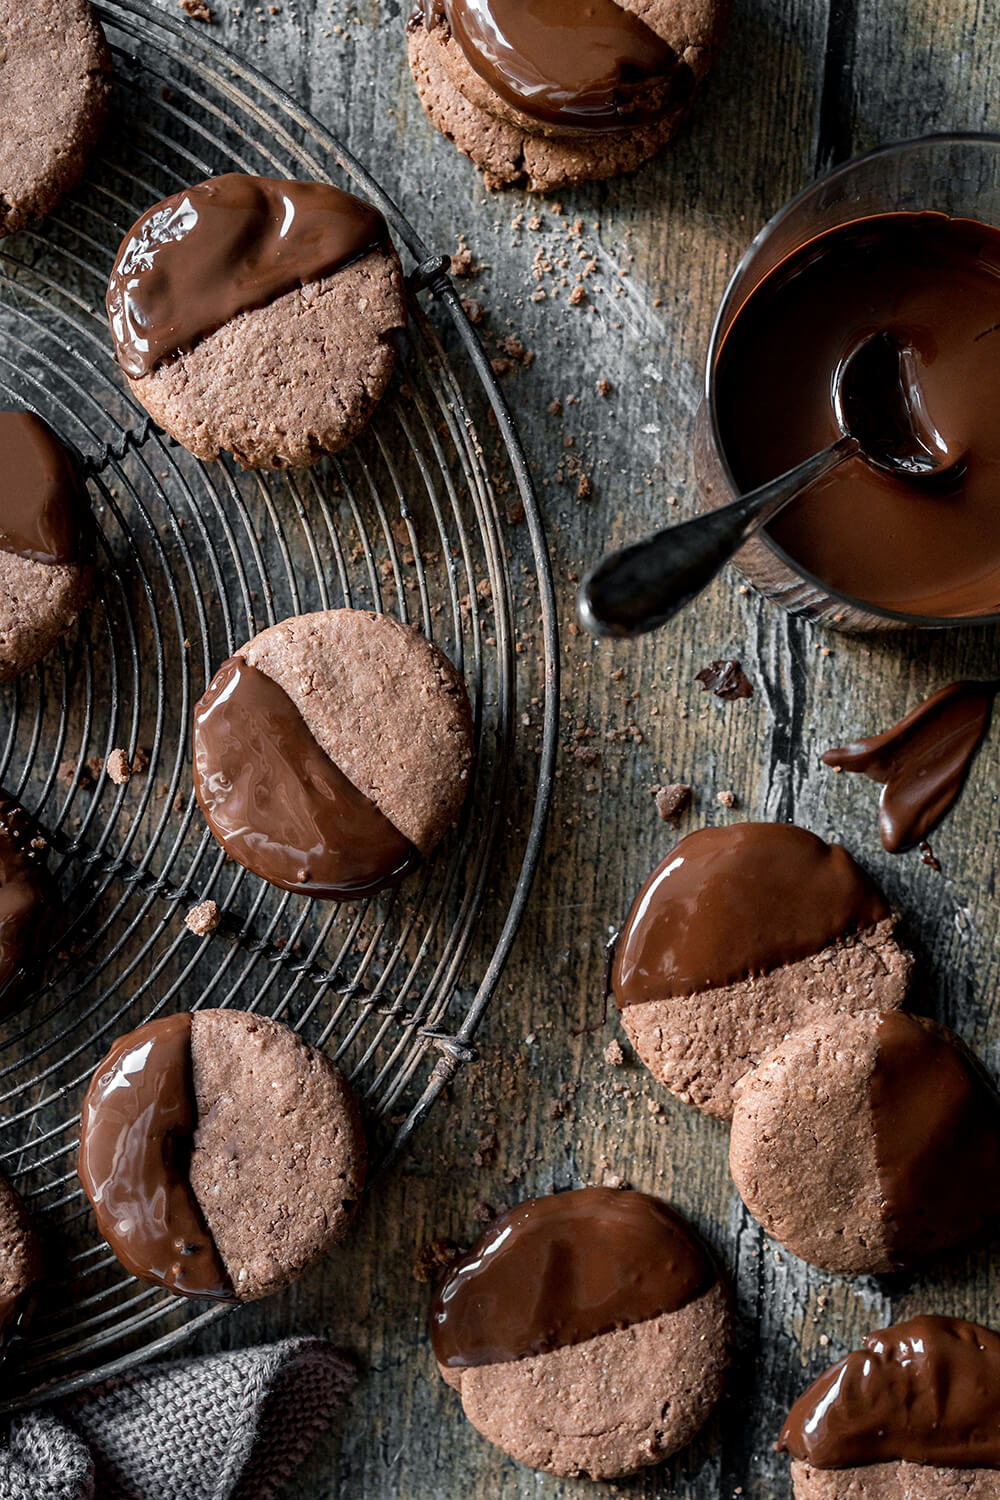 Nutella-Kekse mit Schokoladen-Glasur